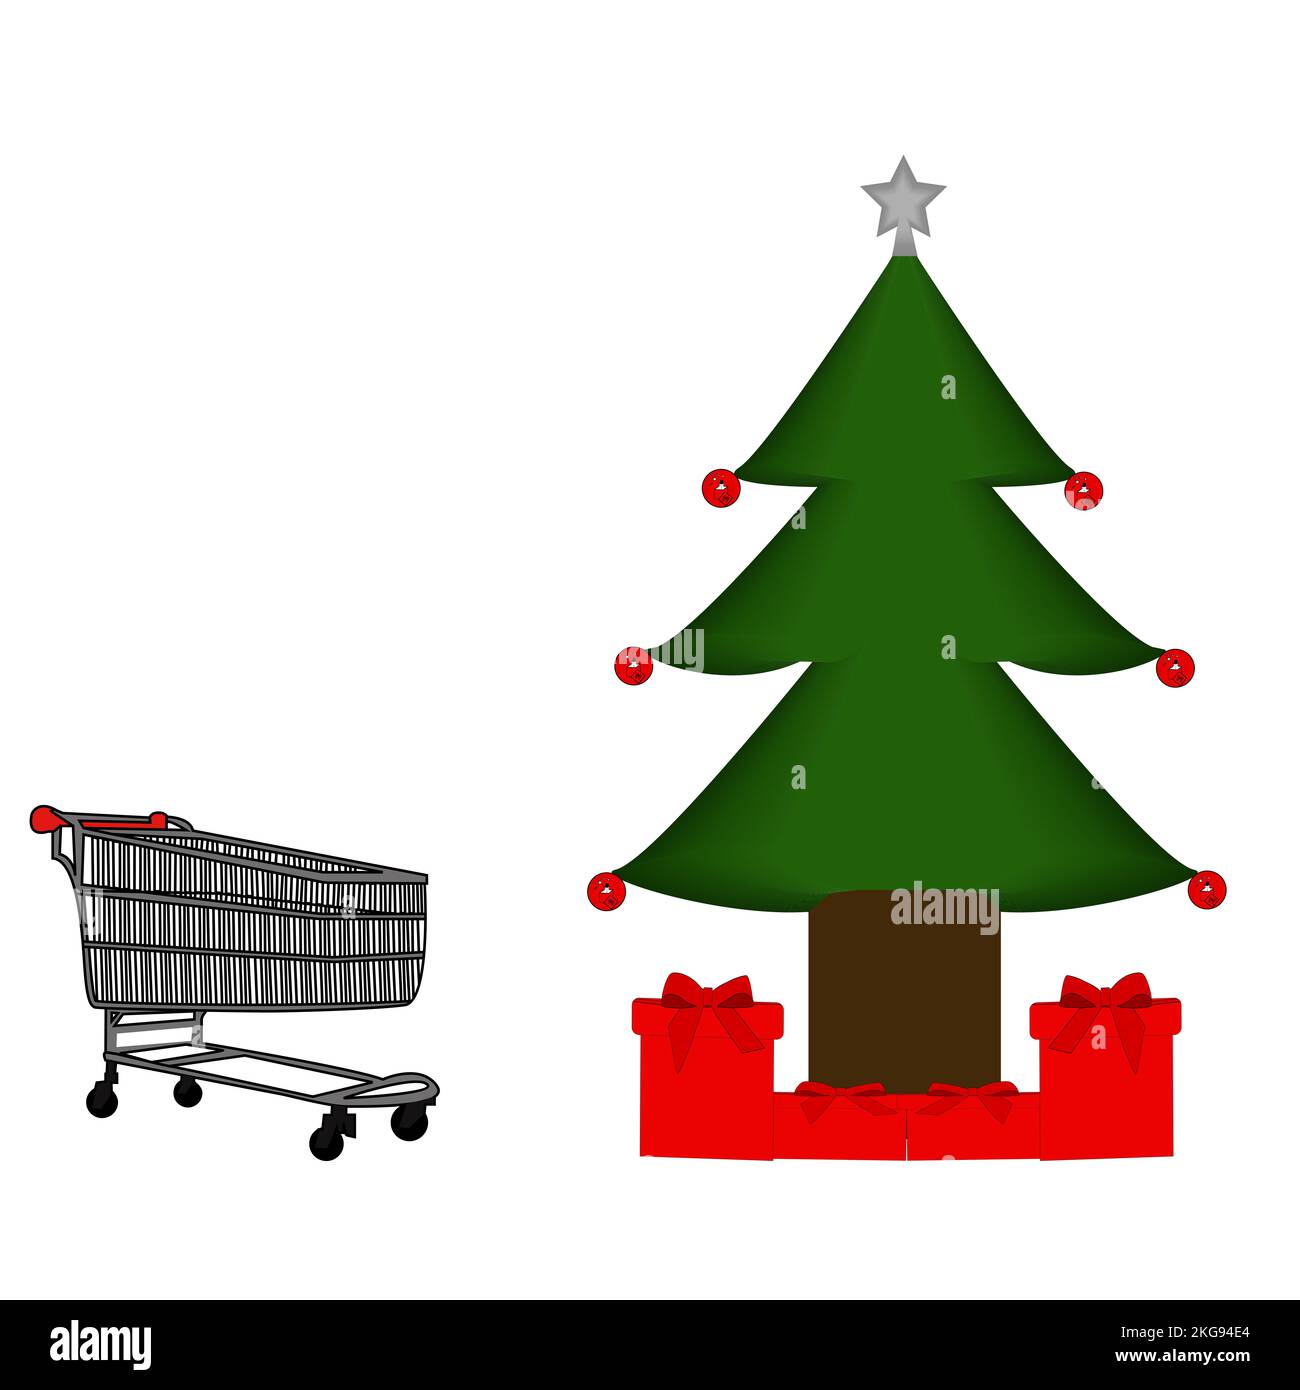 Weihnachtsbaum mit Dekorationen, Superwagen und Weihnachtsgeschenken Stockfoto